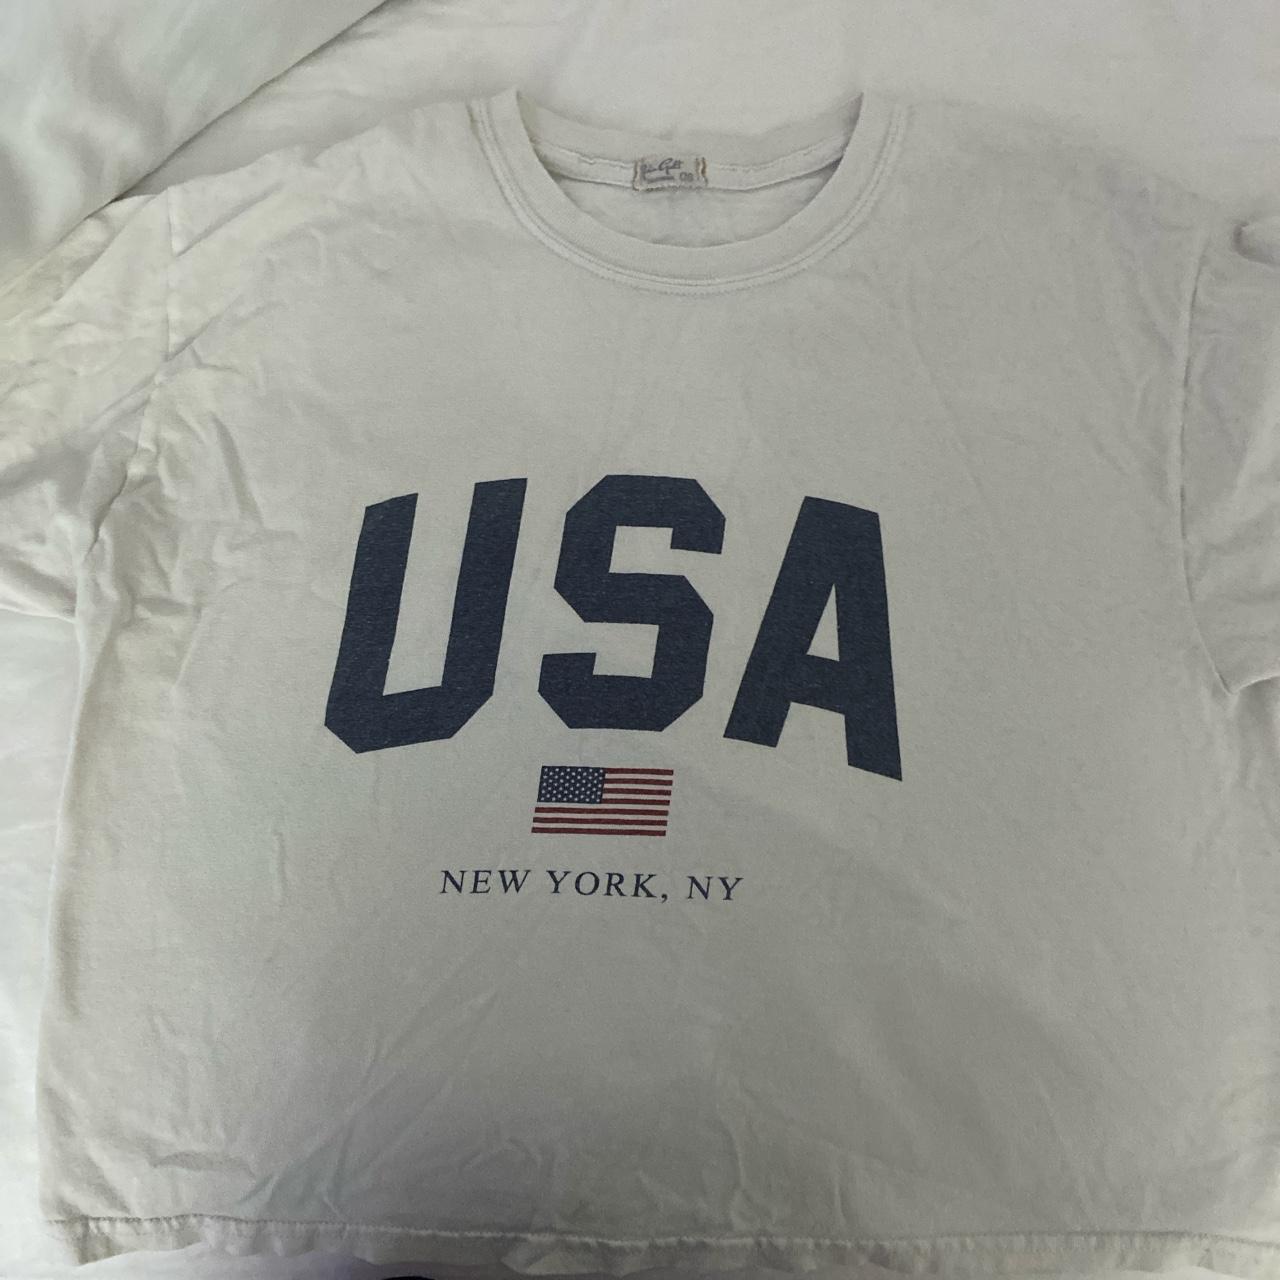 RARE BRANDY super cute USA shirt super comfy and... - Depop